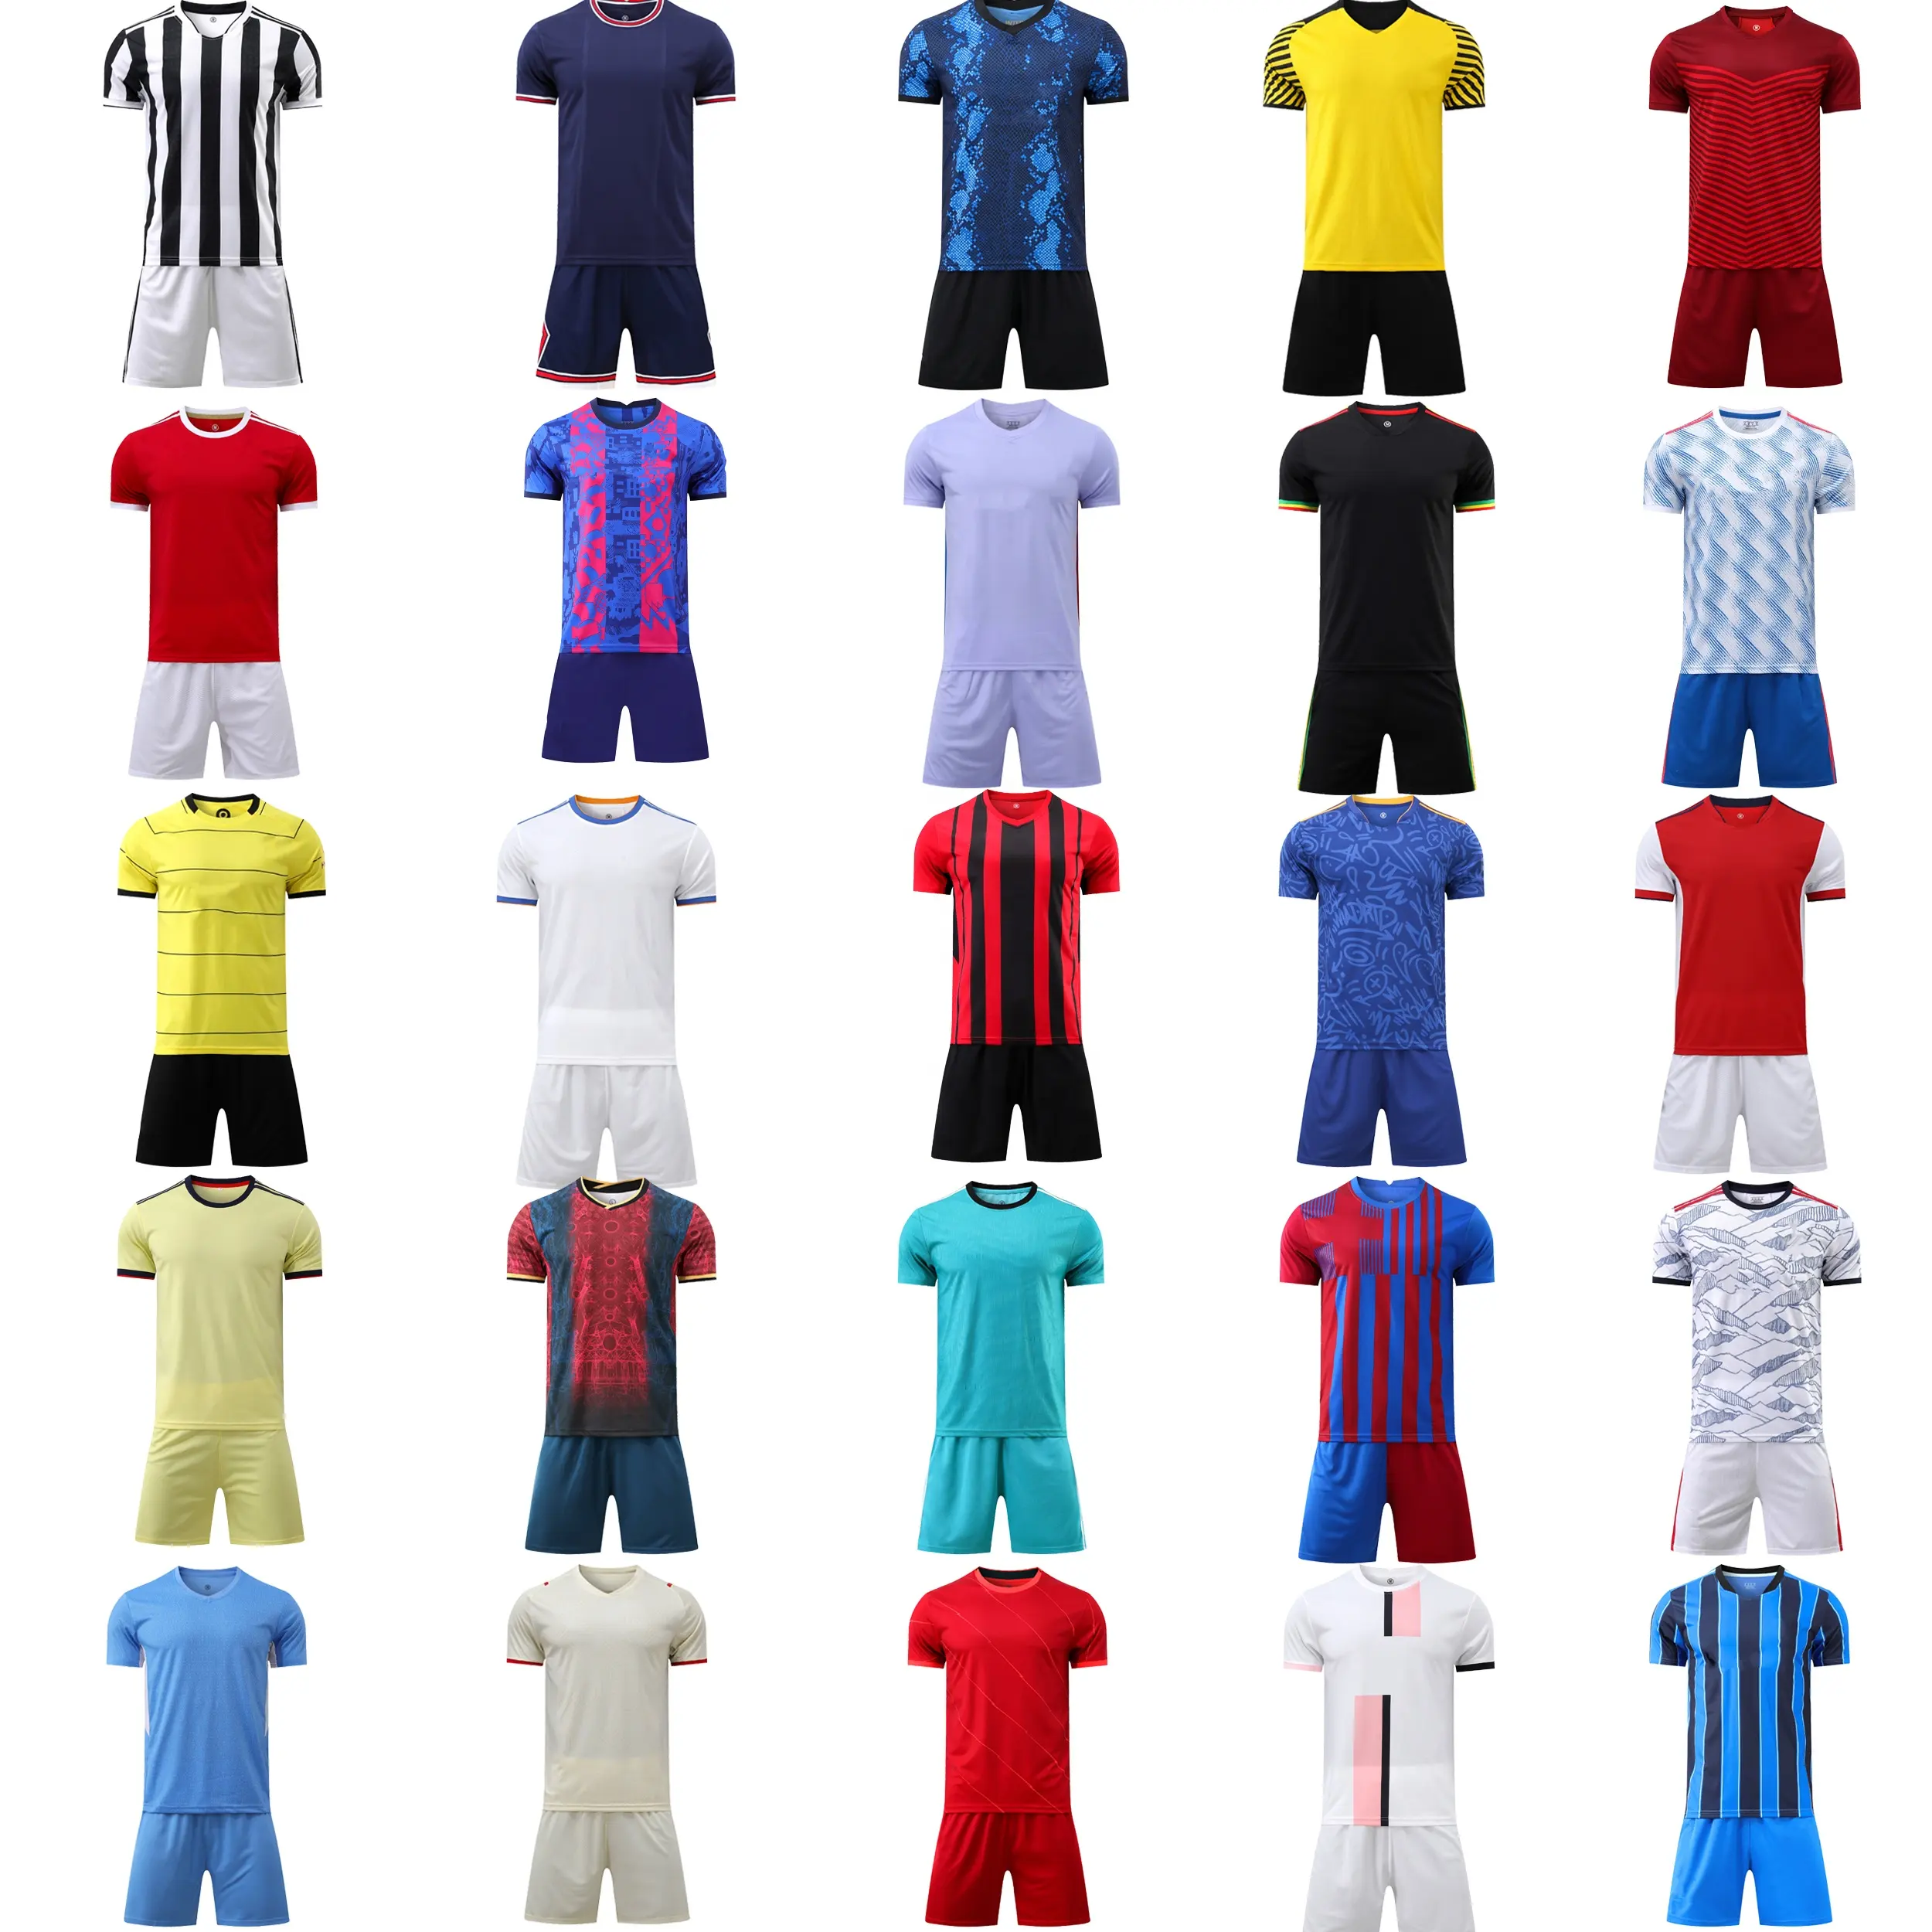 تصميم فريق كرة قدم عدة رخيصة مجموعة قمصان كرة قدم فريق مايوه دي القدم التسامي ملابس كرة القدم الطباعة لكرة القدم جيرسي